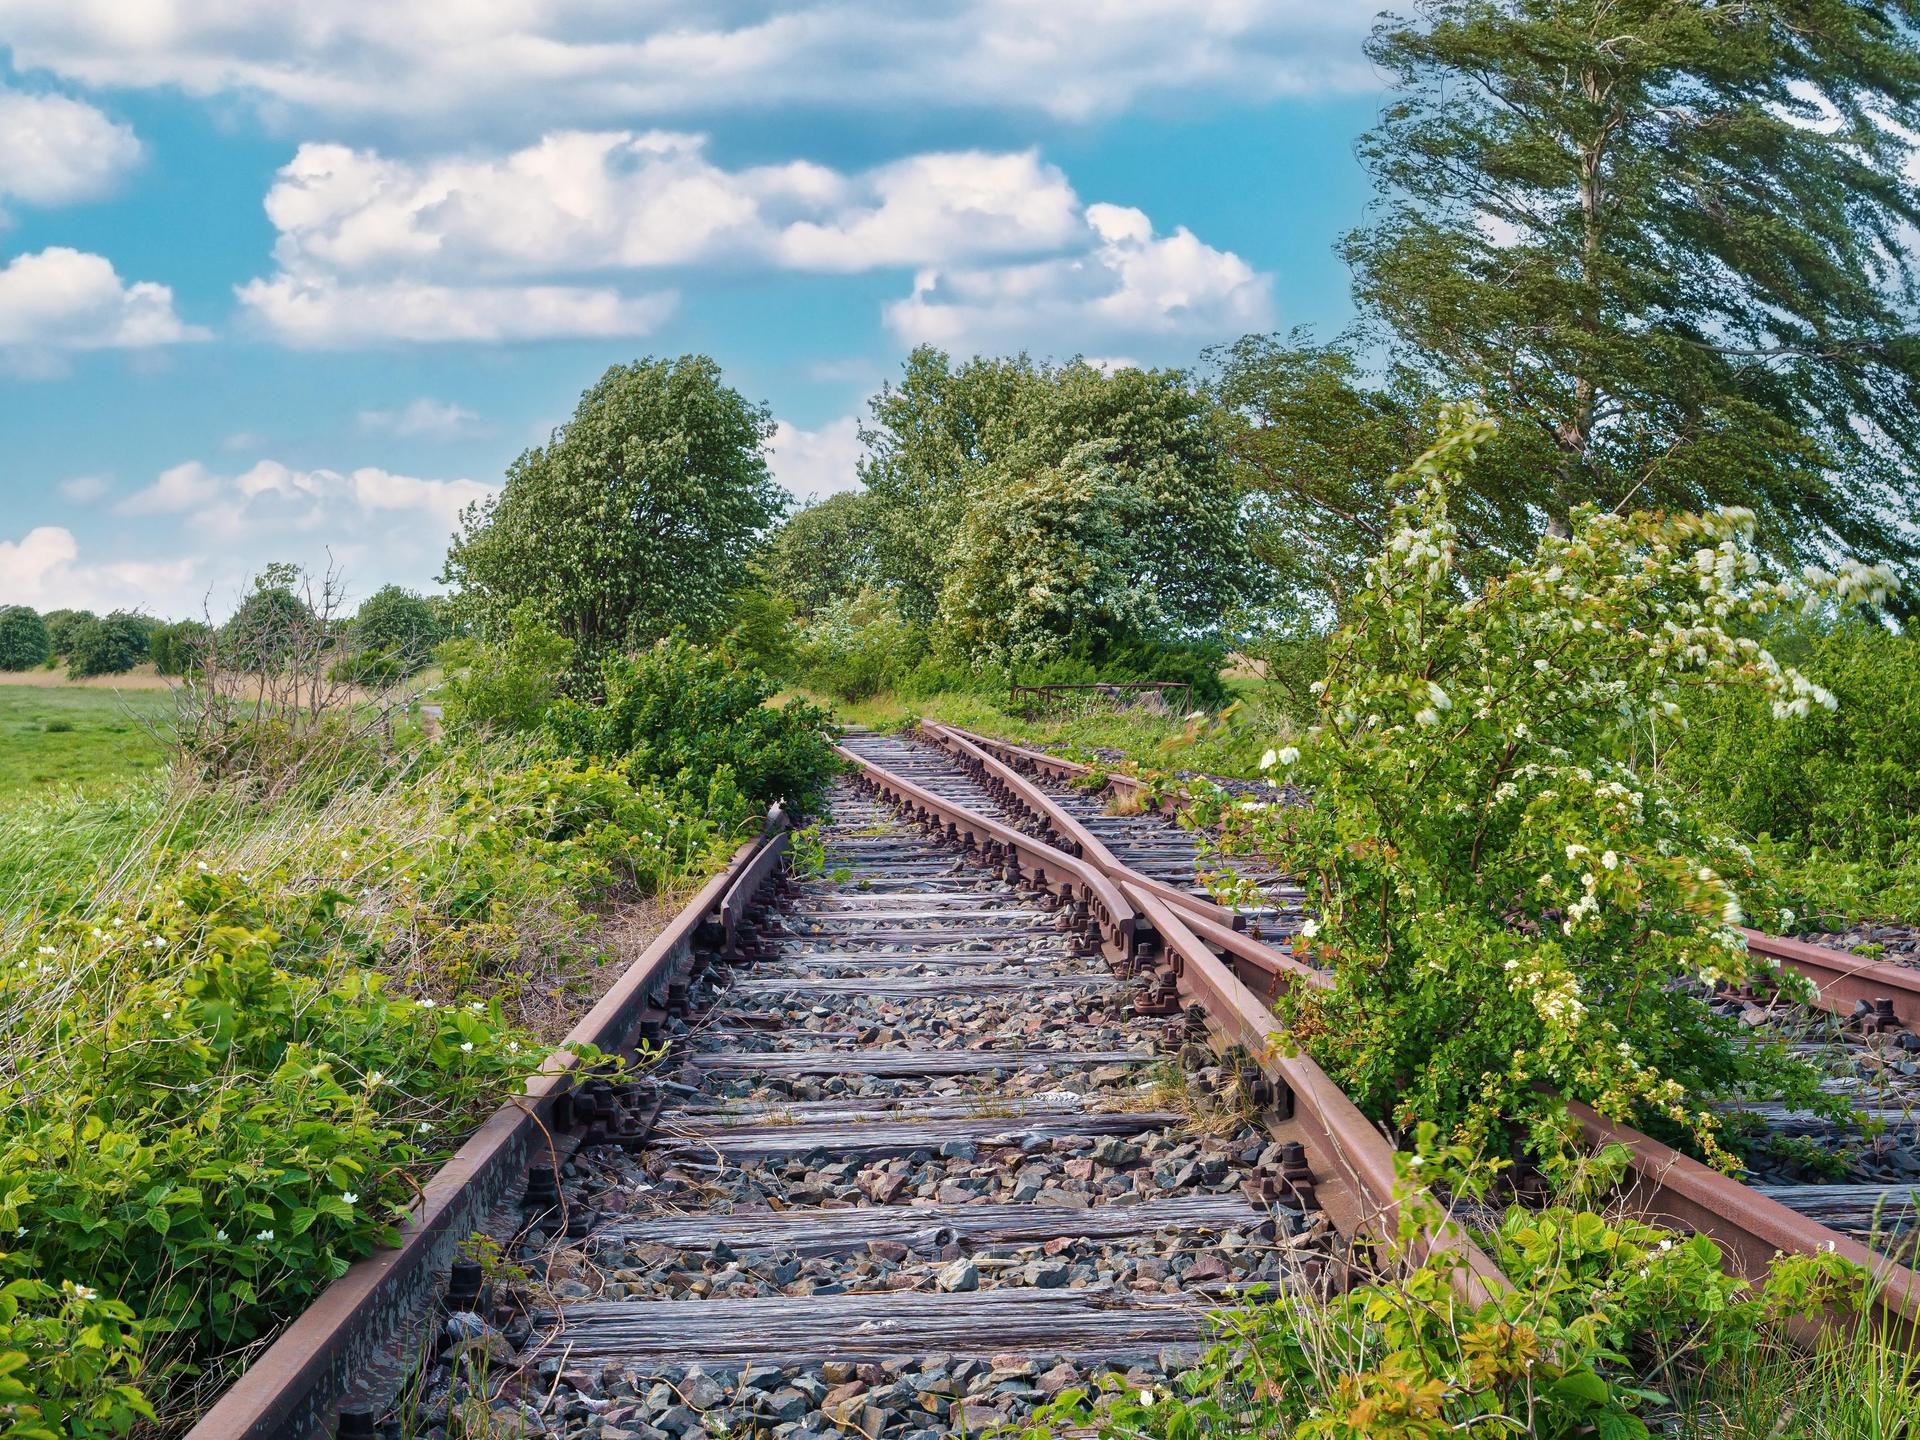 Gleise auf der ehemaligen Bahnstrecke nach Fischland-Darß, Bresewitz, Mecklenburg-Vorpommern, die wiederbelebt werden soll